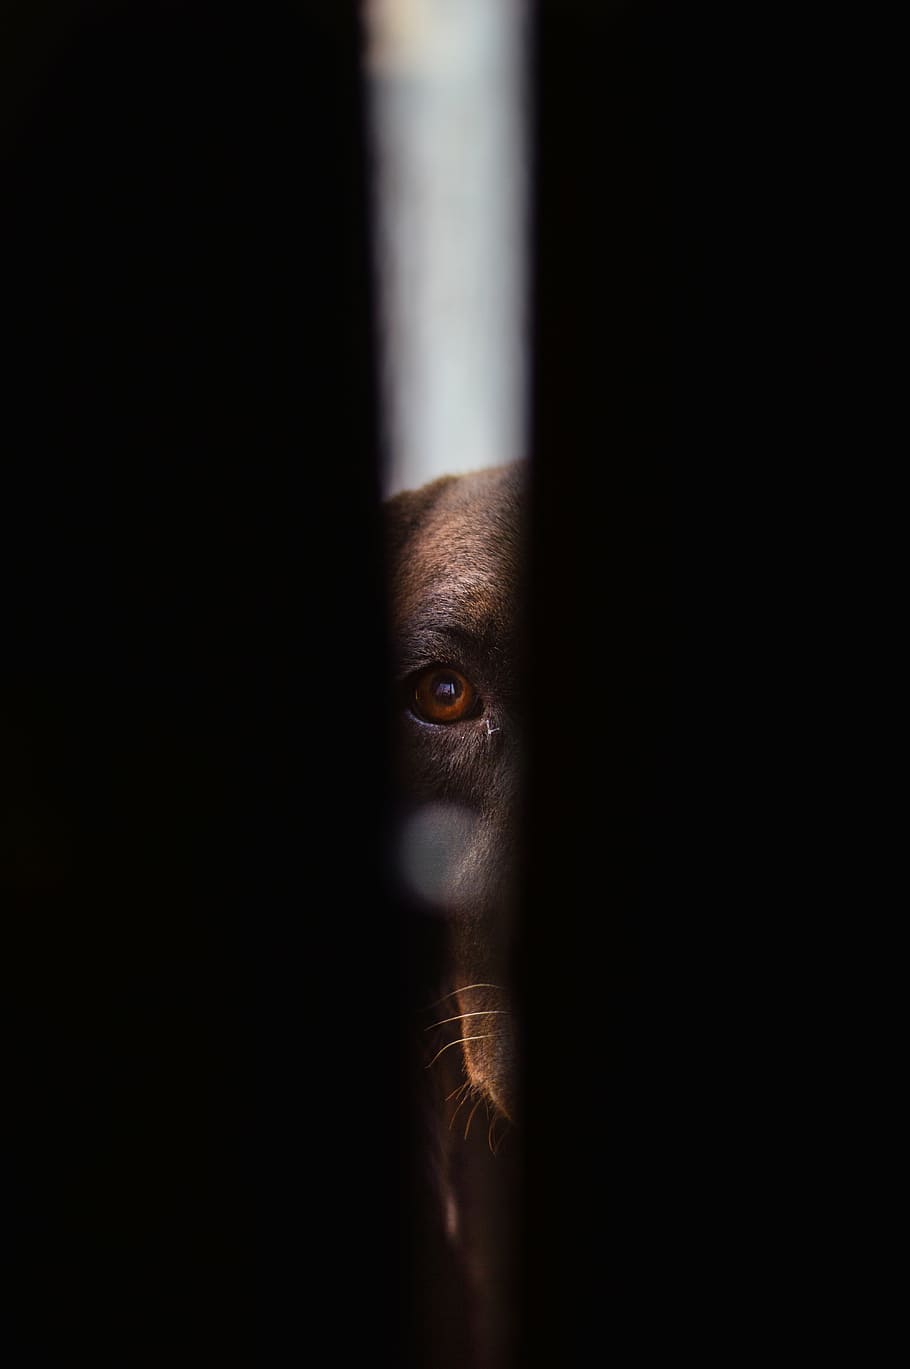 foto de primer plano, perro, mirando, agujero, oscuro, negro, animal, mascota, ojo, escalofriante